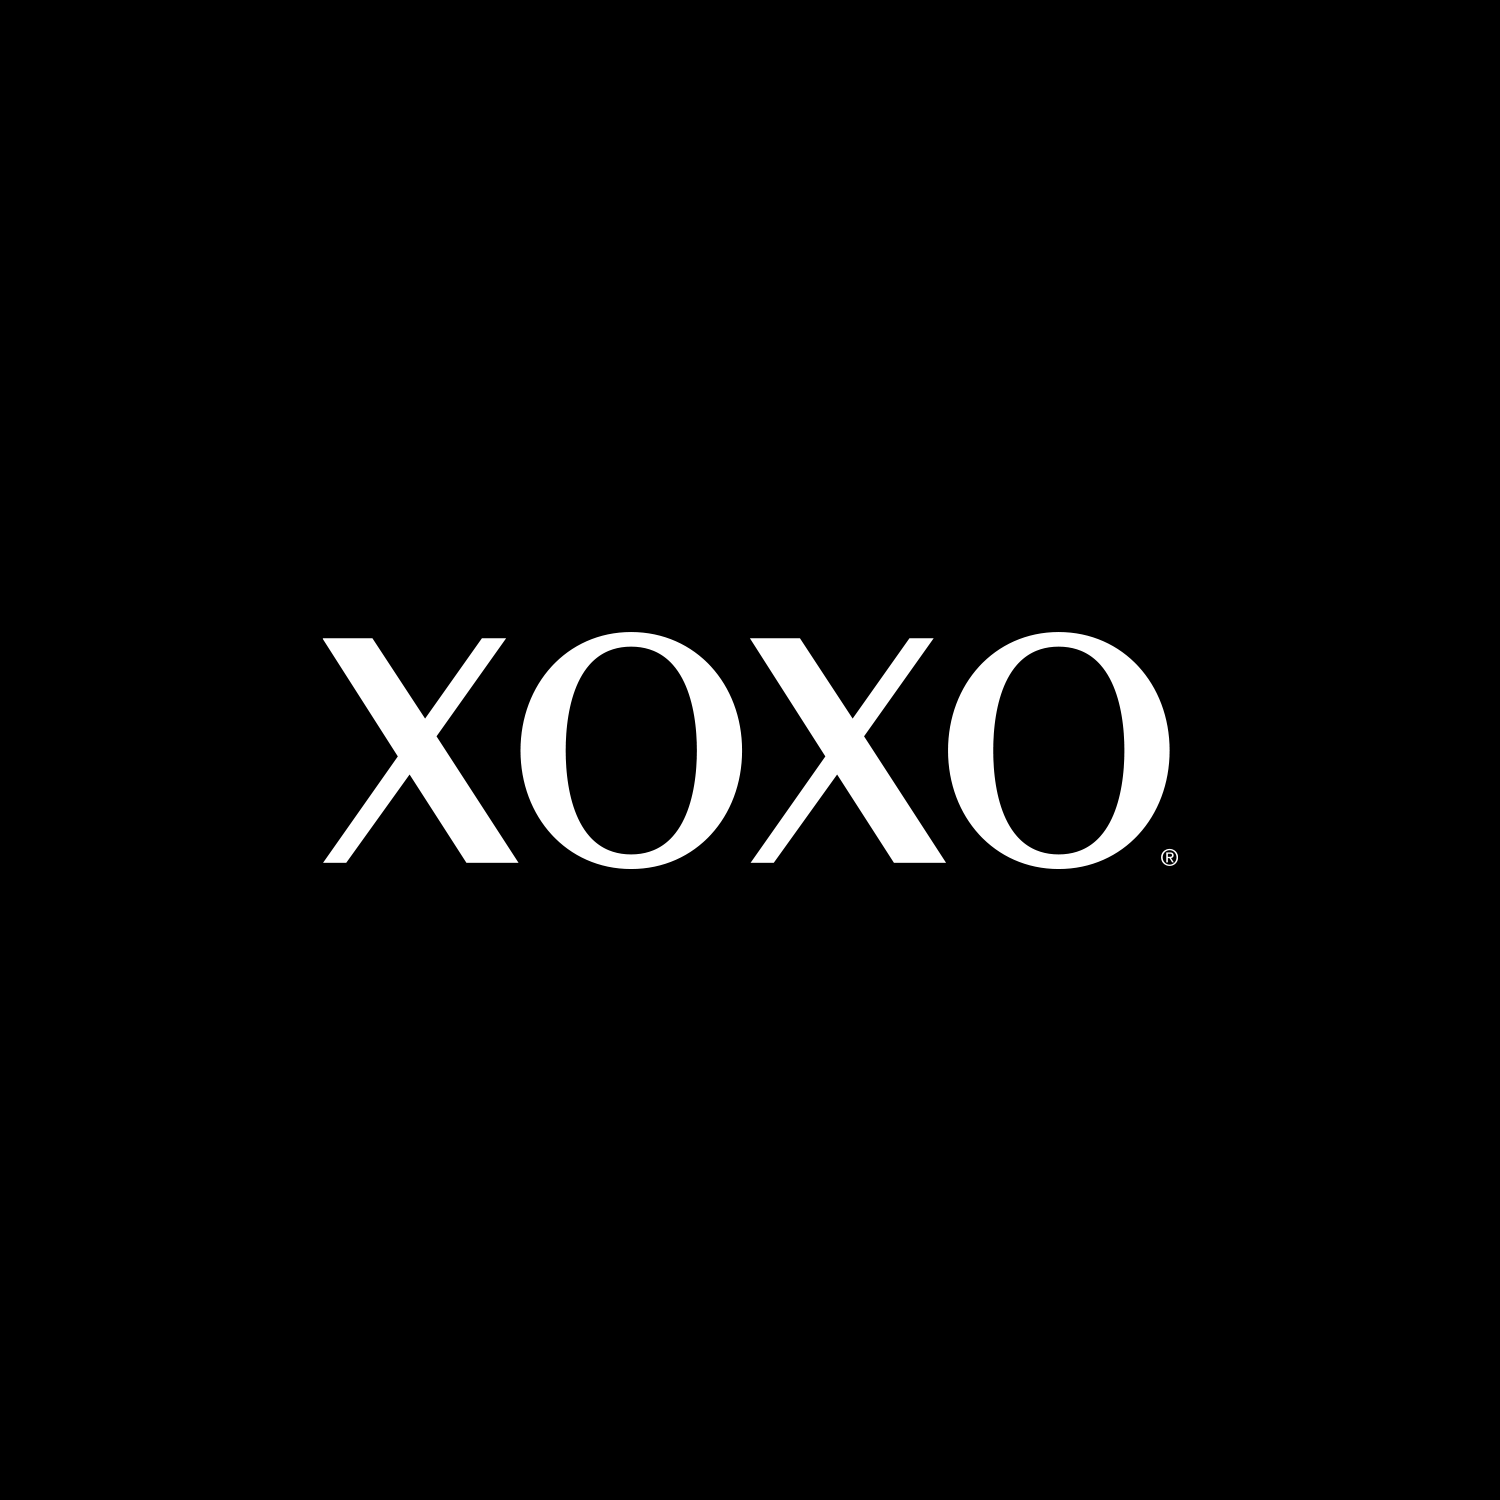 XOXO Eyewear - Logo Black and White